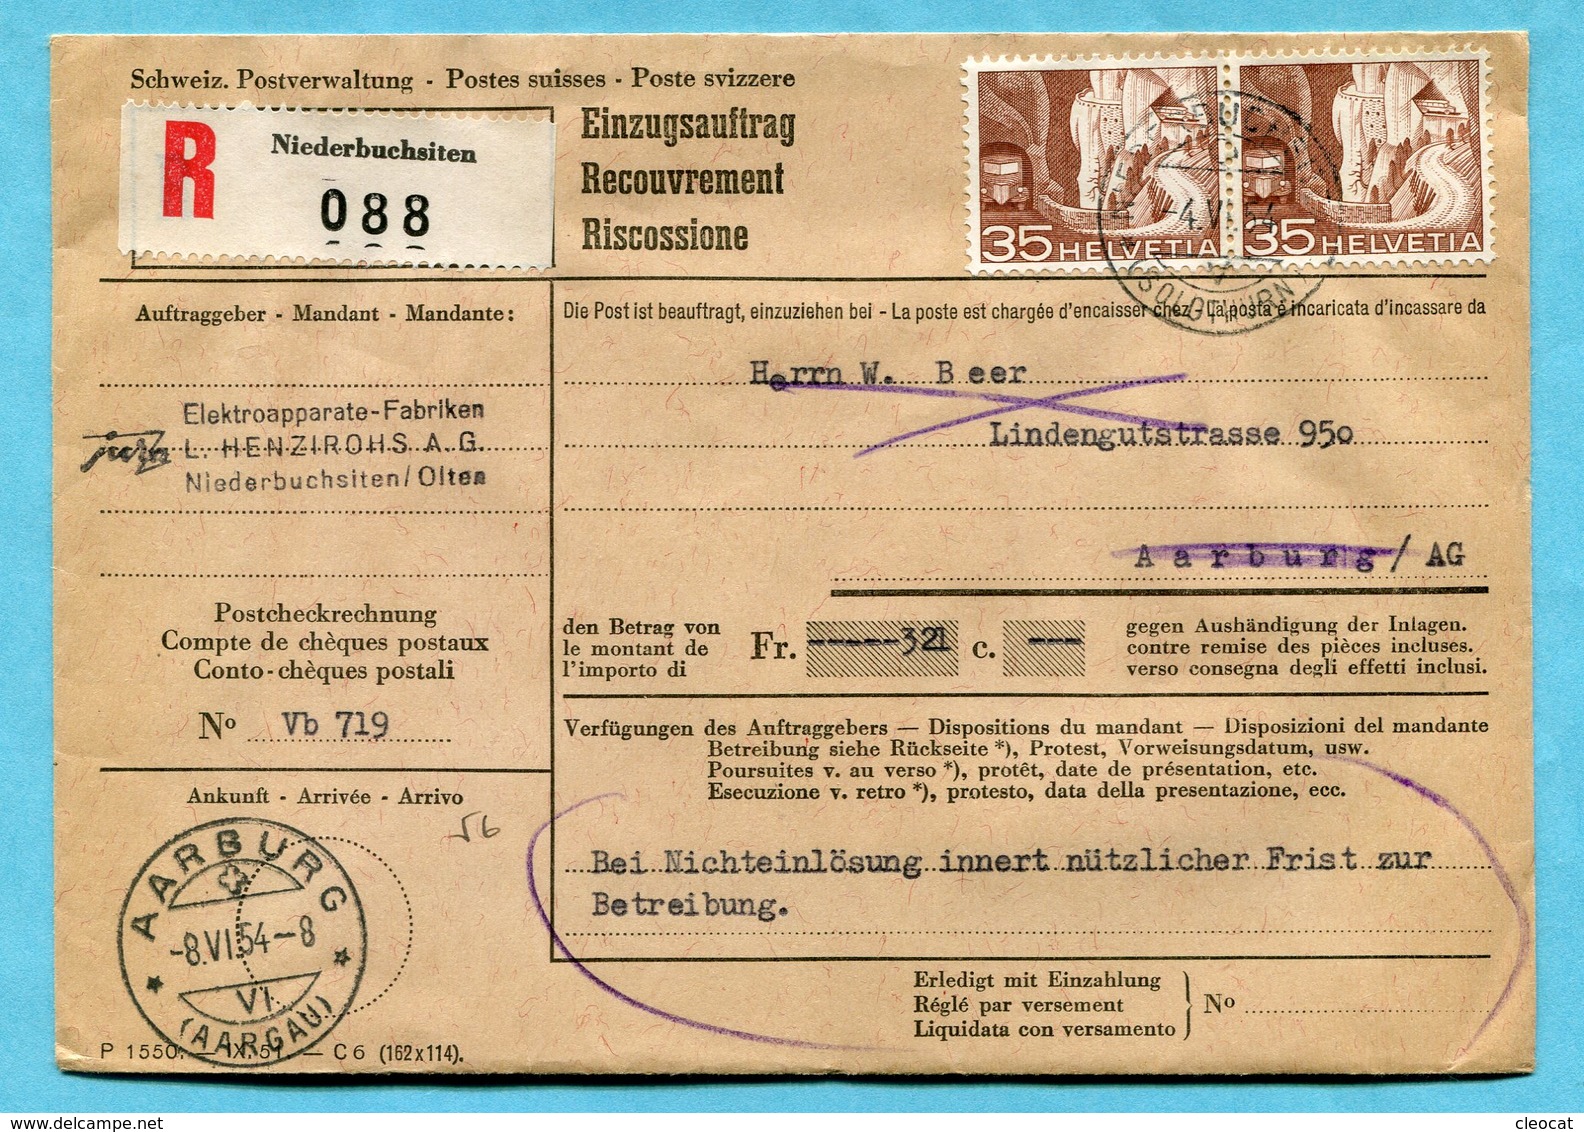 Einzugsauftrag Niederbuchsitten 1954 - Absender: Jura - L. Henzirohs A.G. - Lettres & Documents